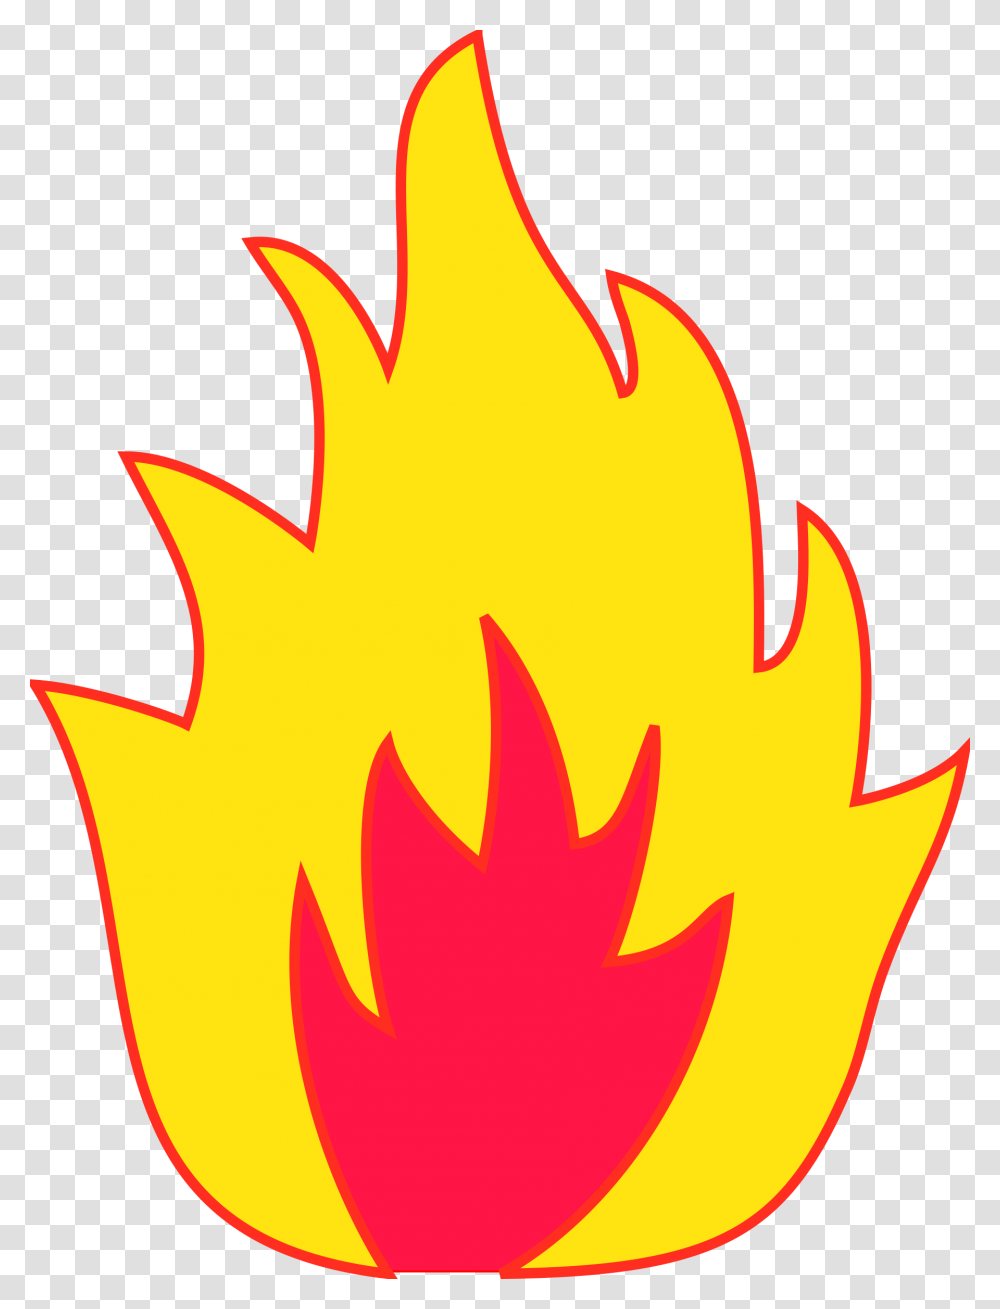 Pentecost Clipart Single Flame Cute Borders Vectors Animated, Fire, Leaf, Plant, Bonfire Transparent Png